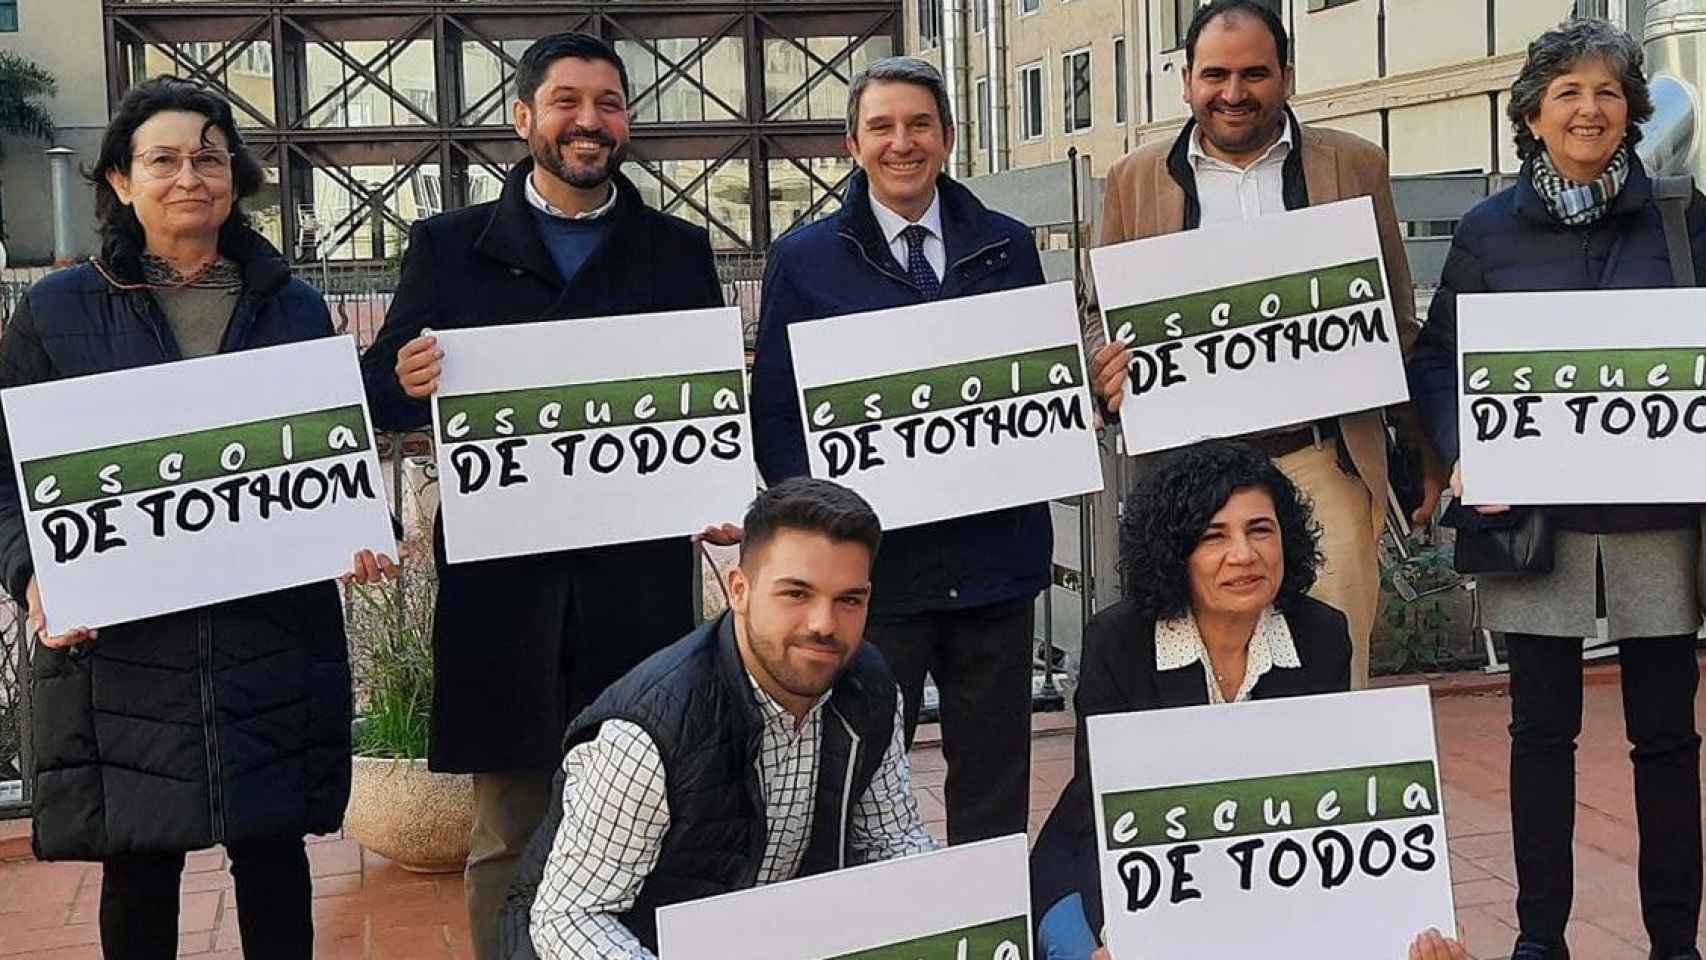 Representantes de Escuela de Todos-Escola de Tothom, entidad que ha enviado una carta a Pedro Sánchez para denunciar la discriminación lingüística / EFE